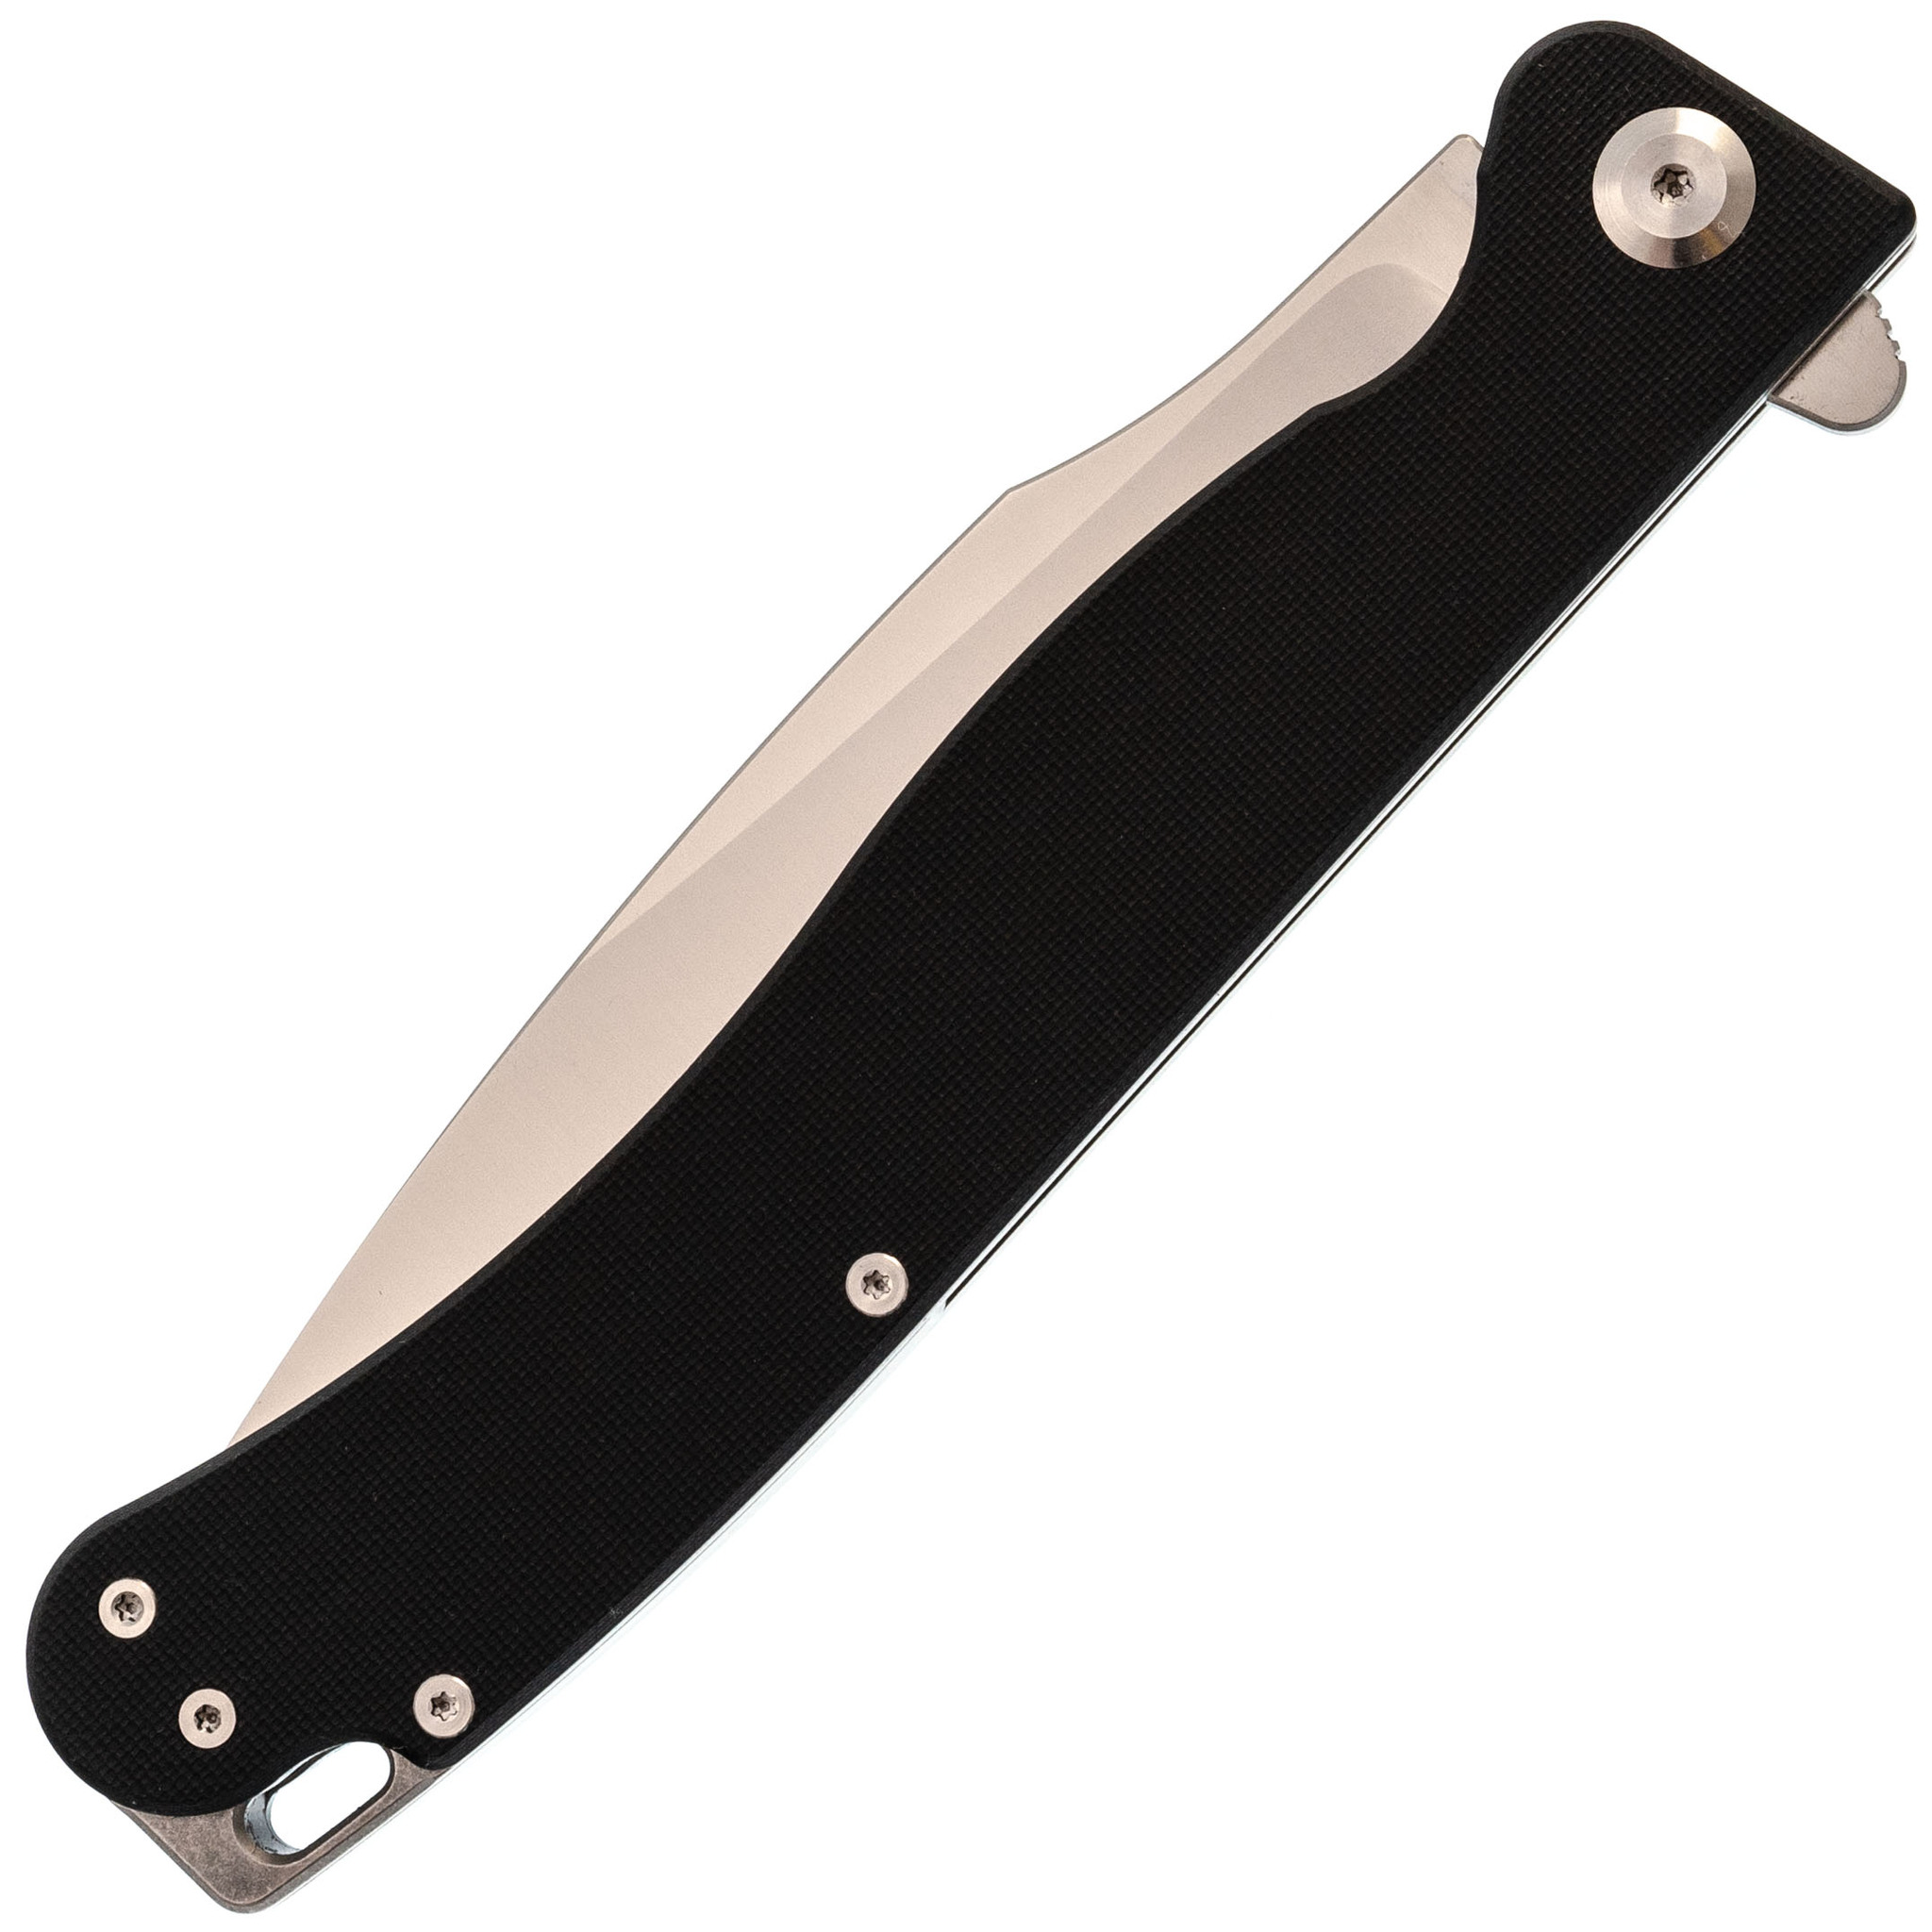 Складной нож Daggerr Condor Black Satin, сталь 154CM, рукоять G10 - фото 9